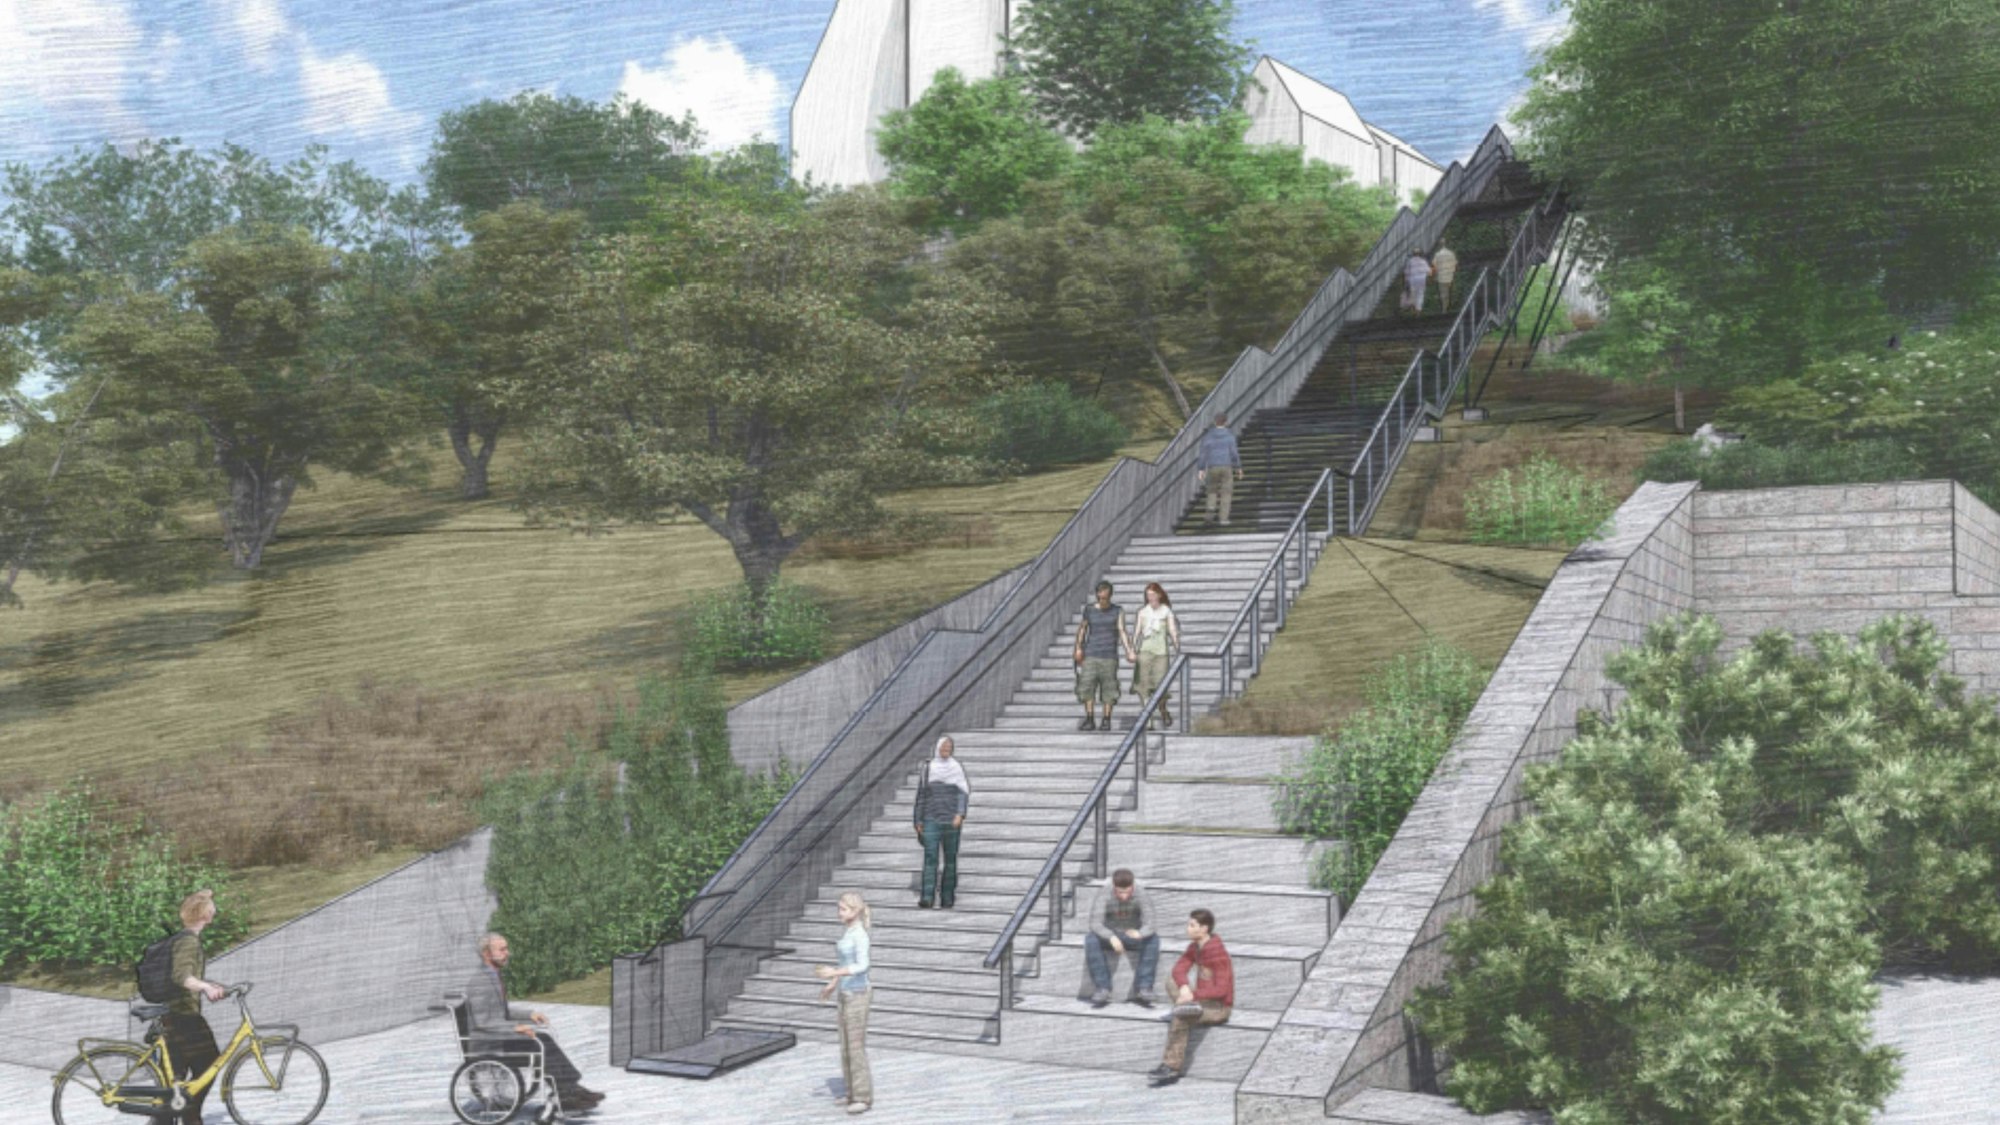 Skizze des Treppen-Projektes Brückenschlag zur Verbindung der Innenstadt und der Altstadt in Bergneustadt